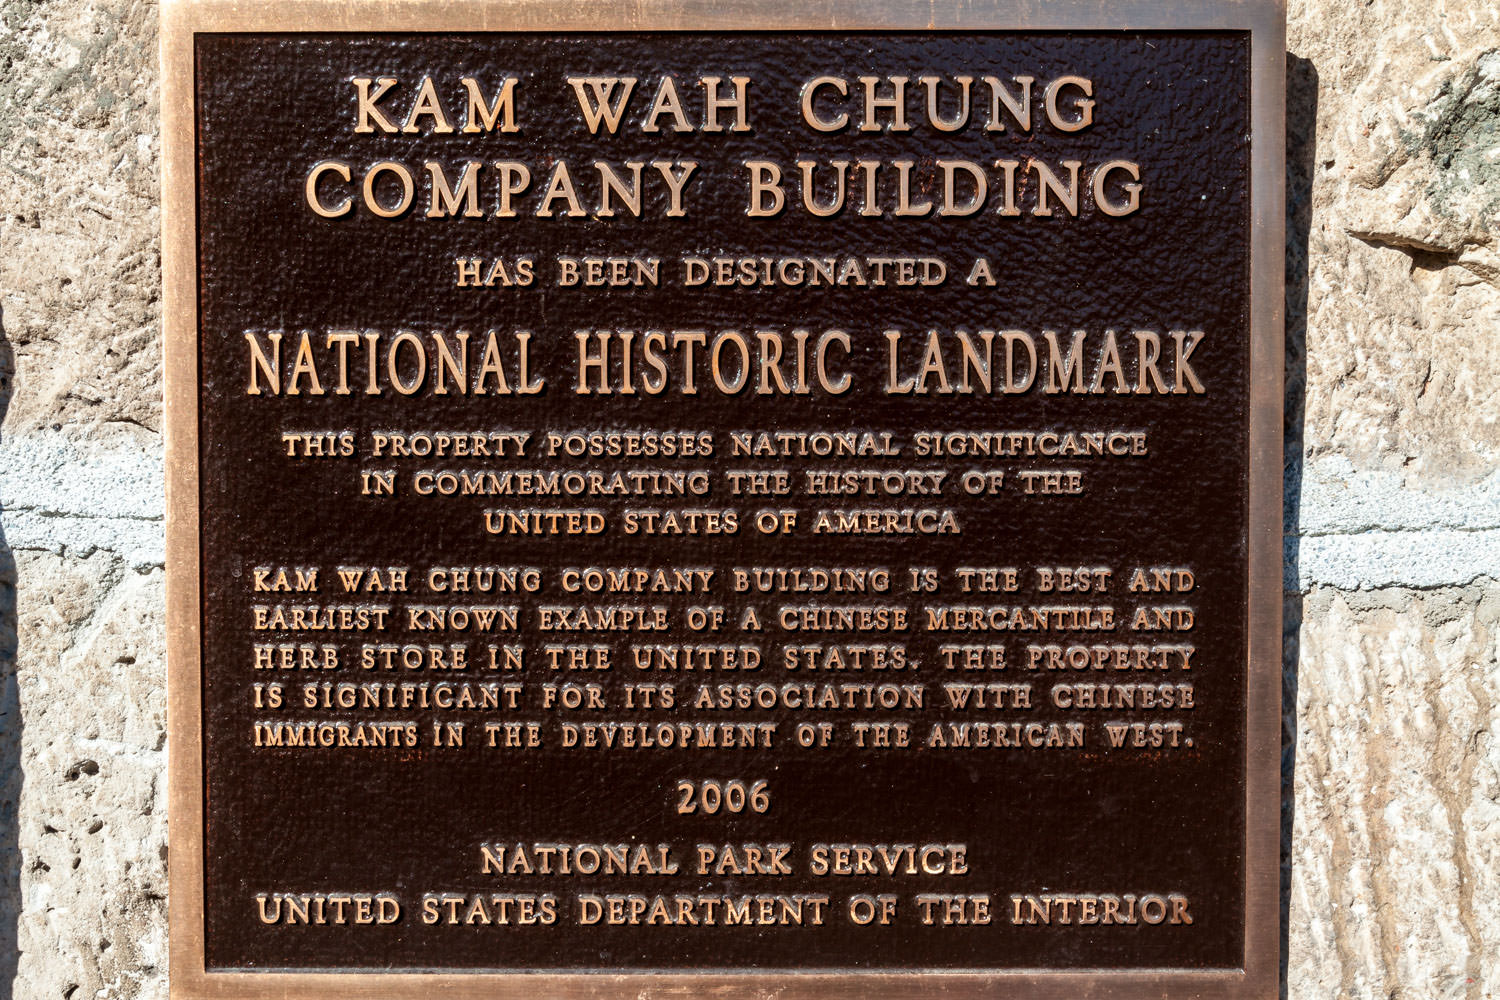 Kam Wah Chung & Co. Museum, John Day, Oregon